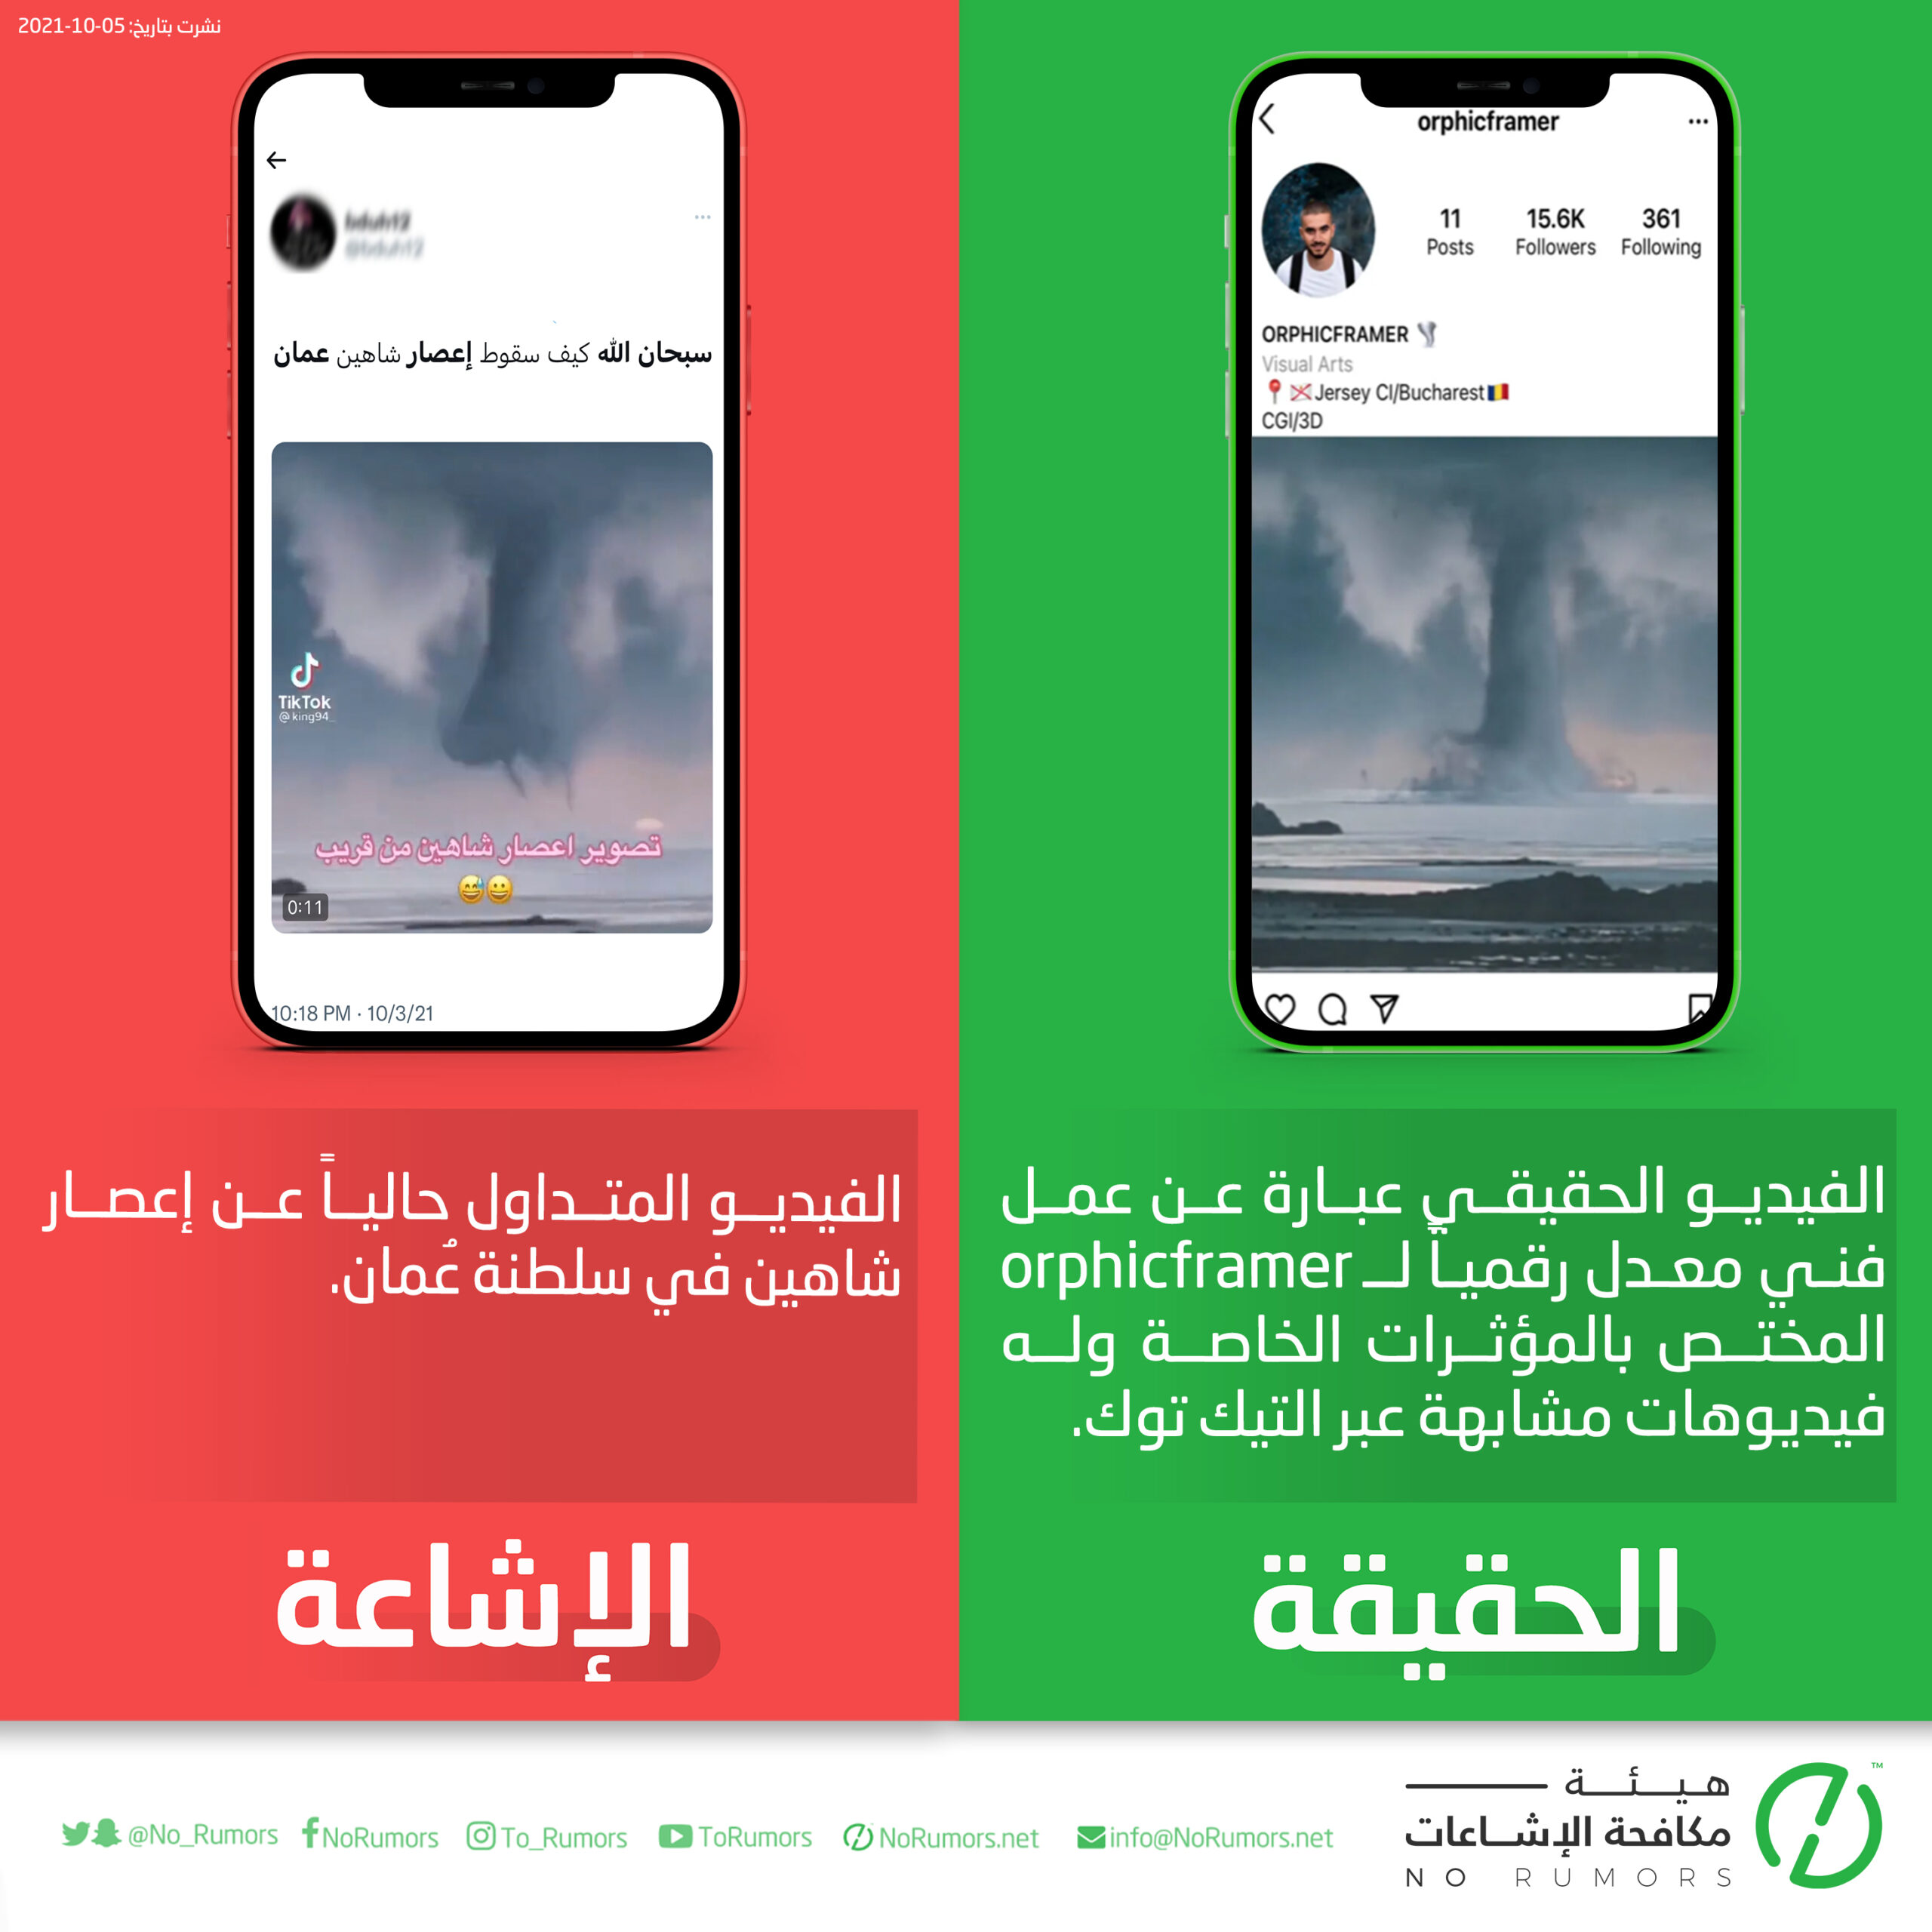 حقيقة الفيديو المتداول عن إعصار شاهين في سلطنة عمان